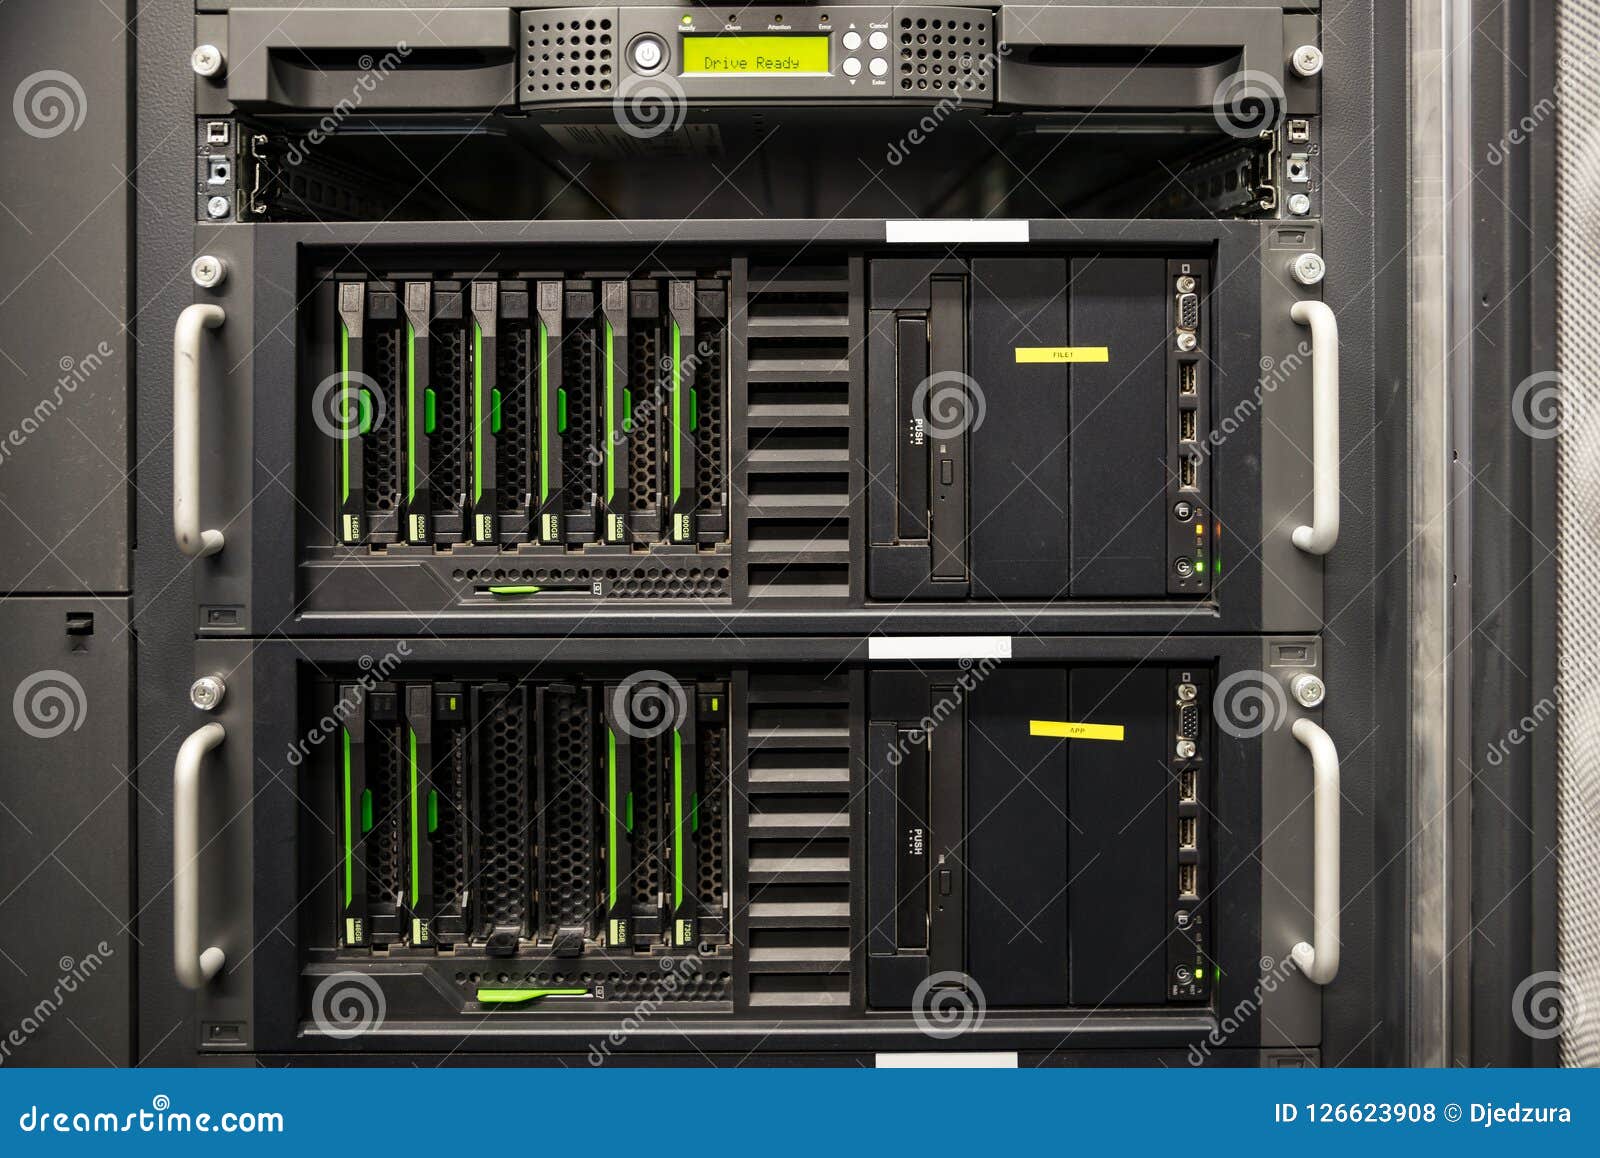 data backup server